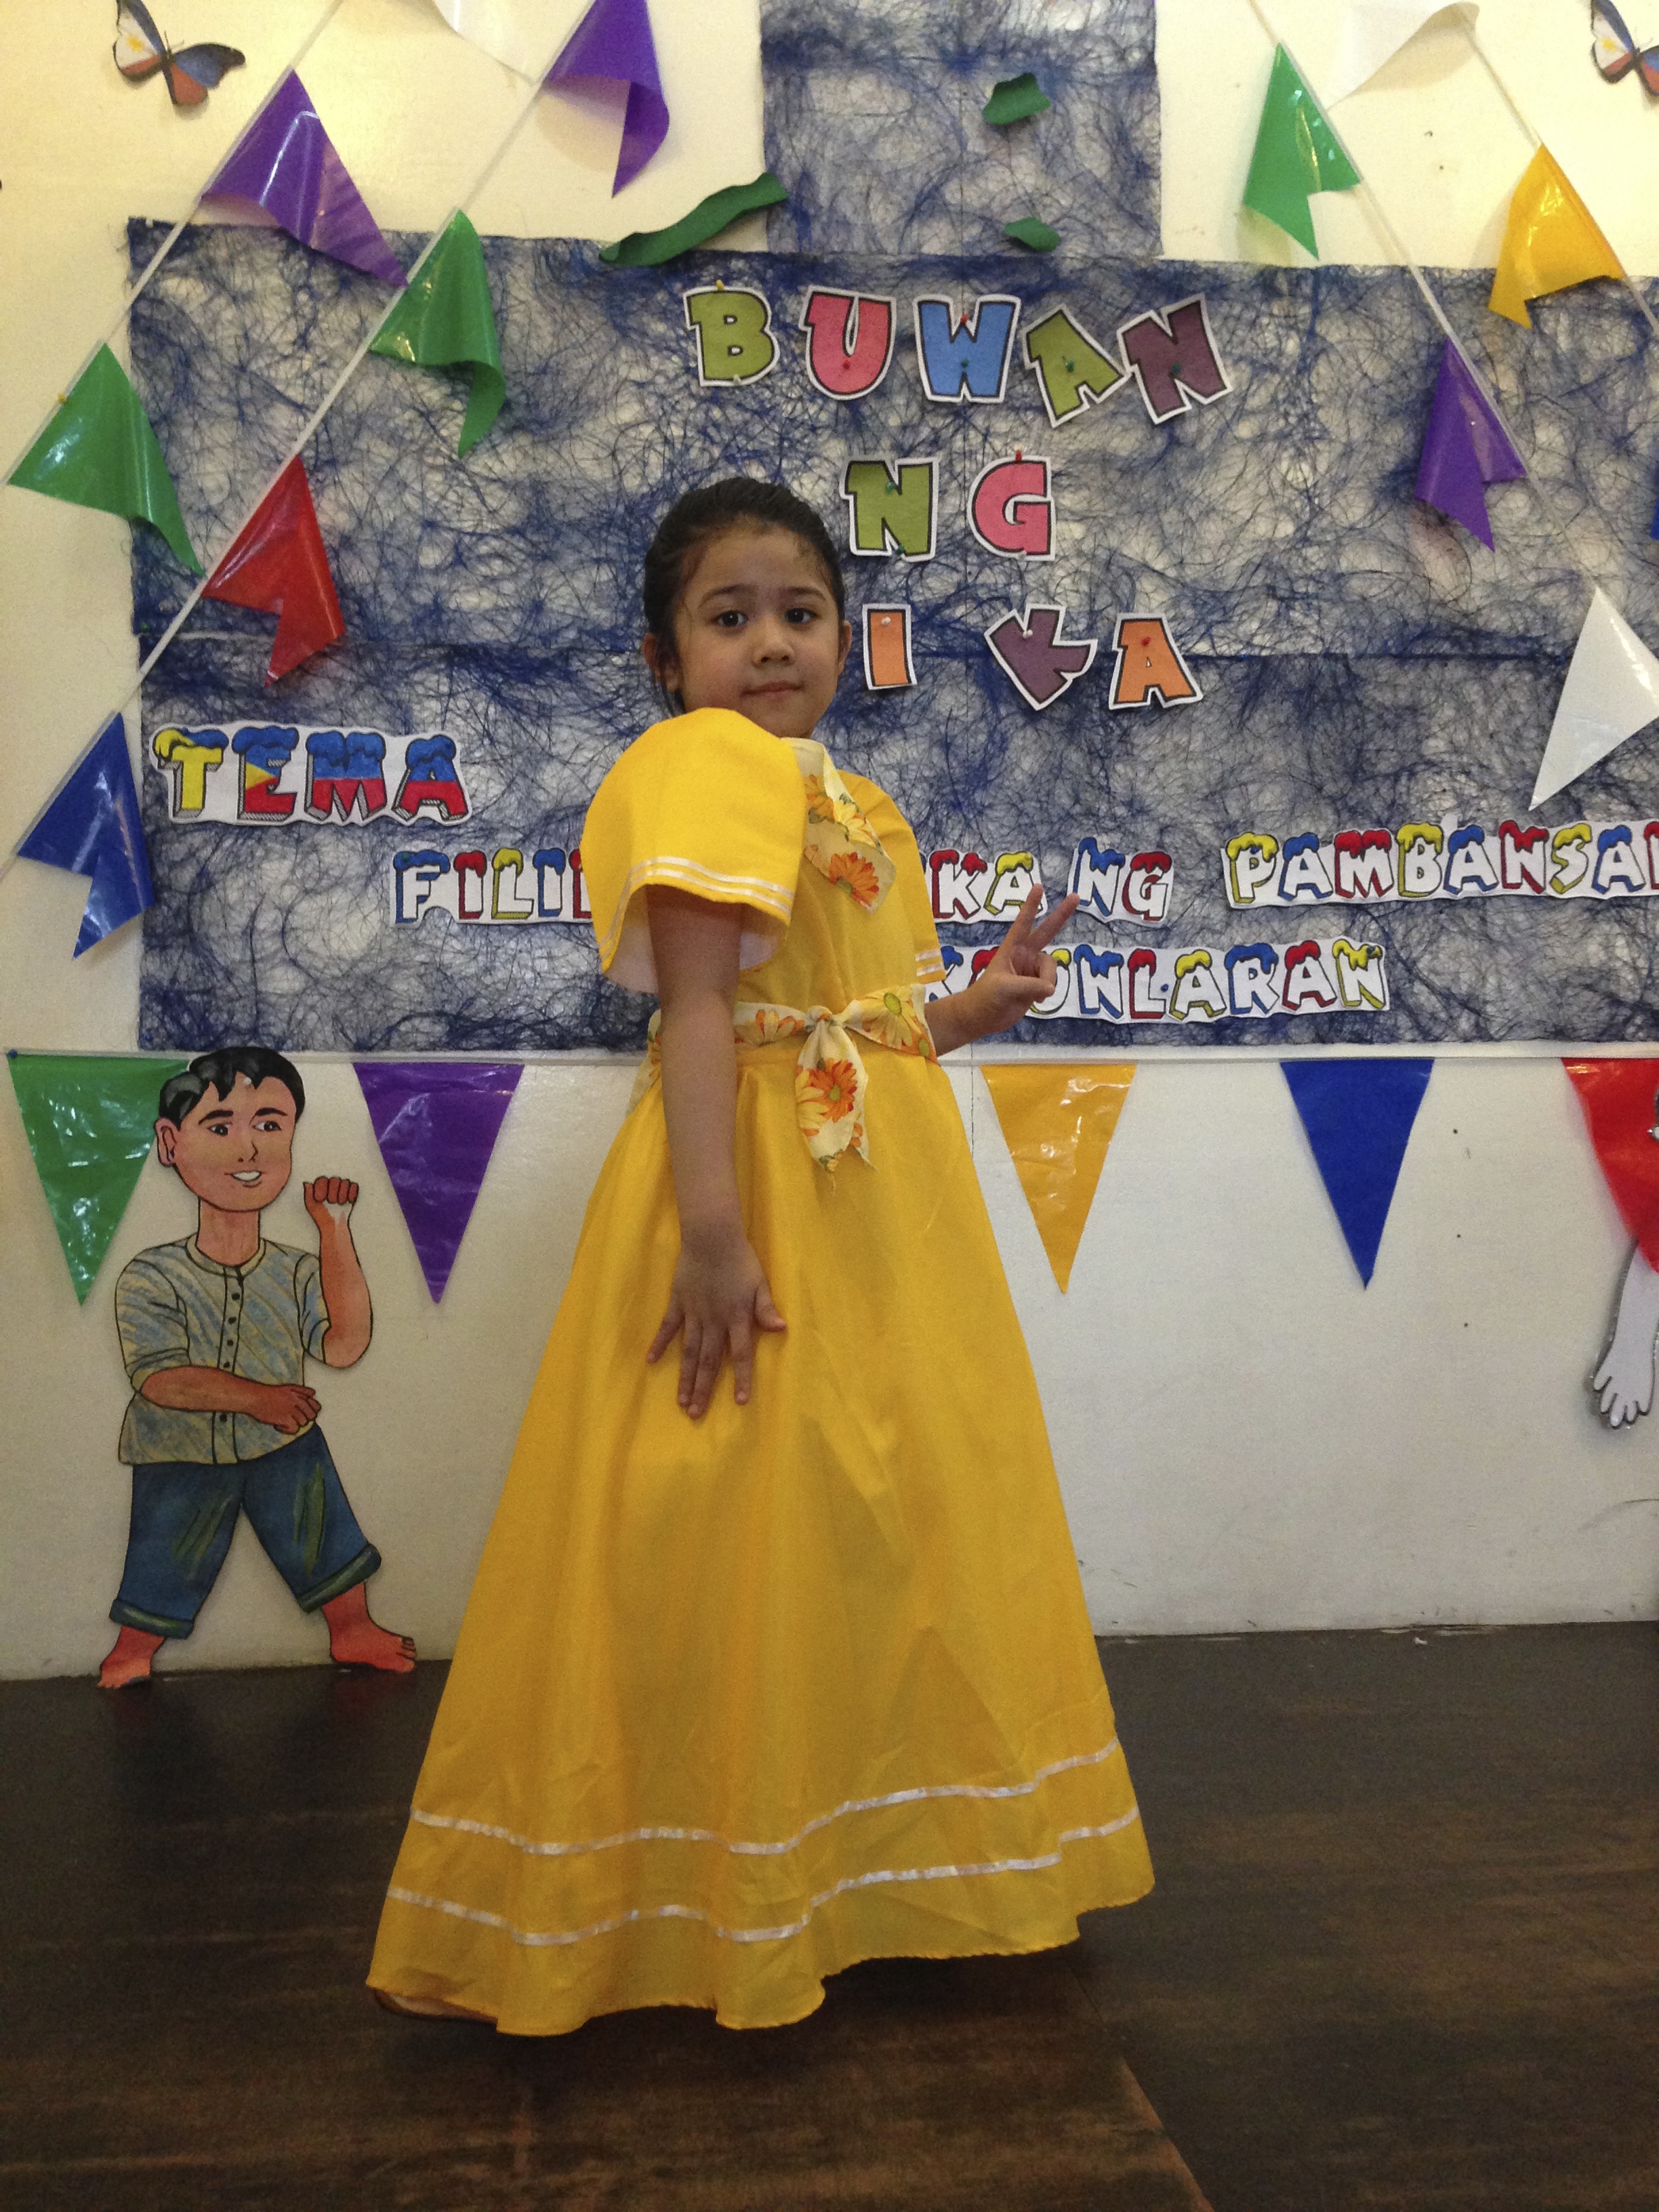 filipiniana dress in baclaran